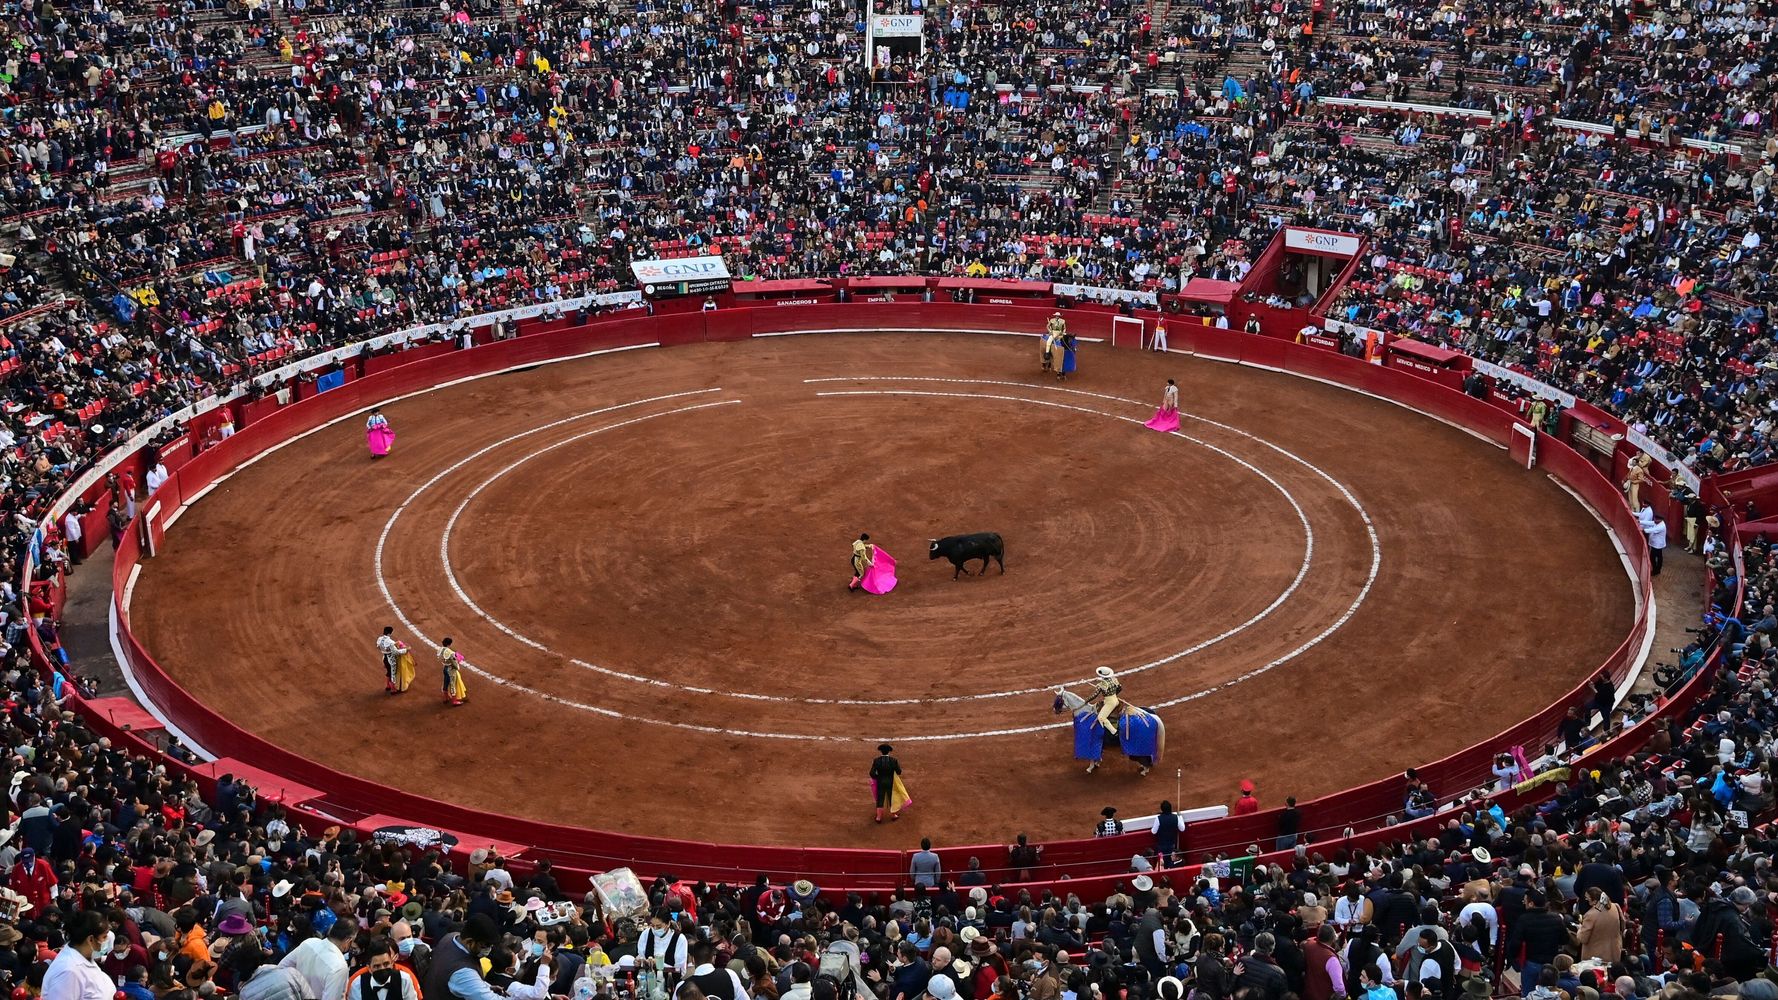 Un juez suspende de manera indefinida las corridas de toros en Plaza México, la más grande del mundo